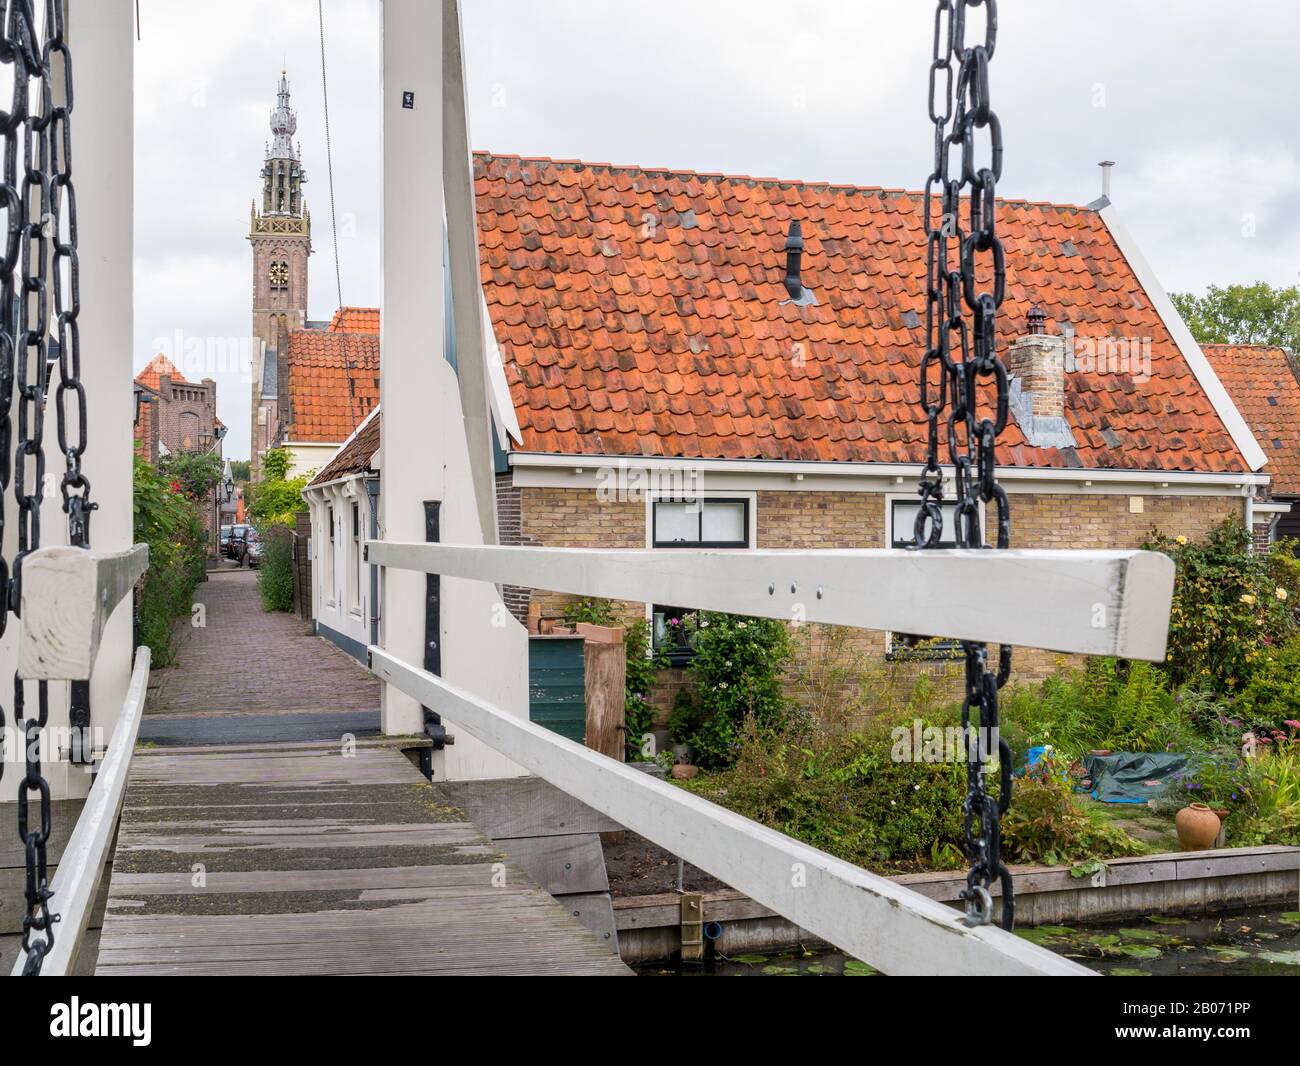 Dibuje el puente Kwakelbrug sobre el canal y el campanario en Edam, Noord-Holland, países Bajos Foto de stock